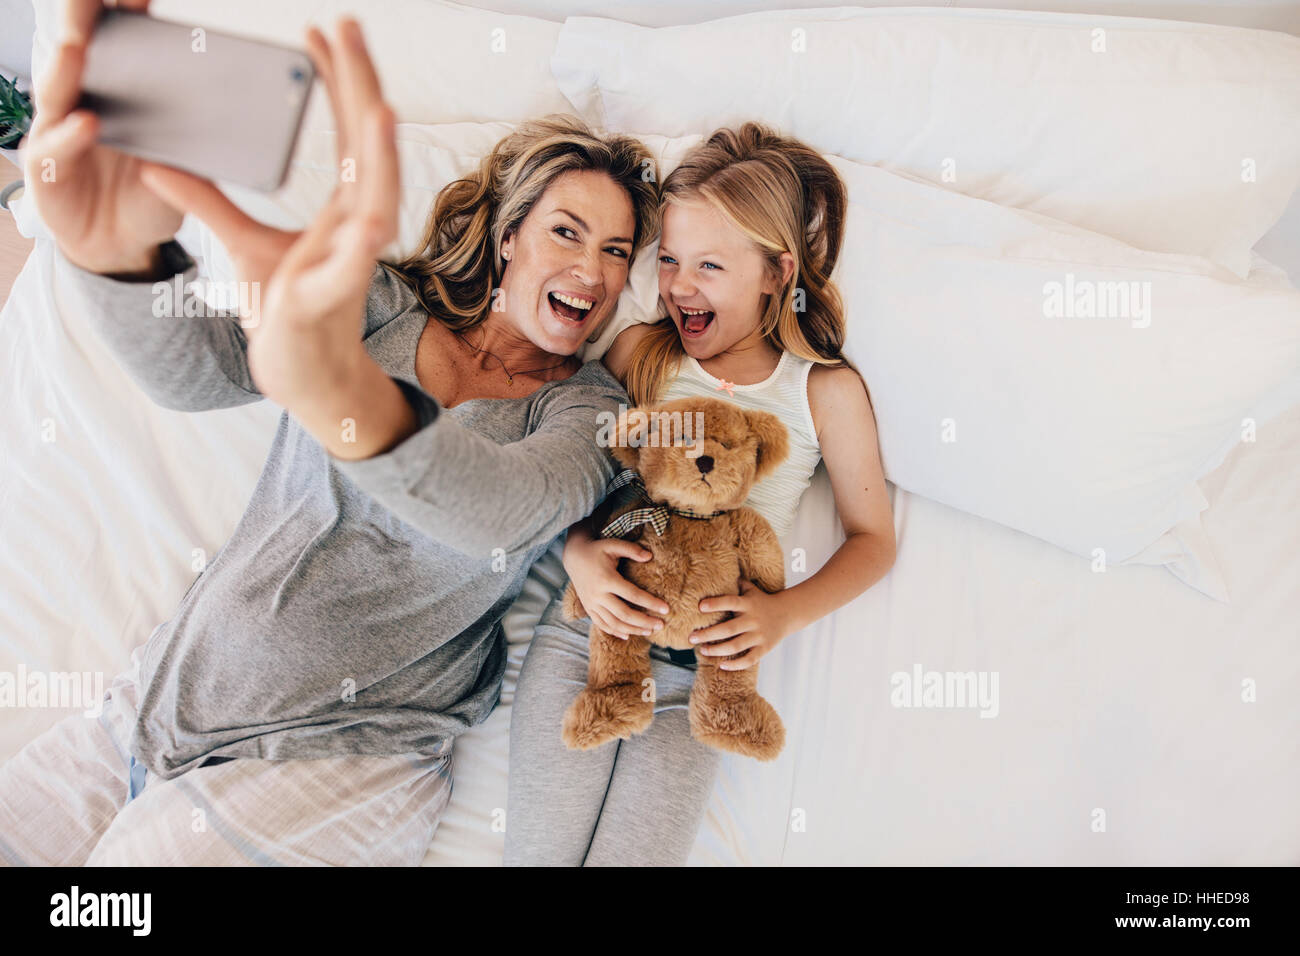 Glückliche junge Mutter nehmen Selfie mit ihrer Tochter. Junge Familien nehmen Selfie auf Bett zu Hause. Stockfoto